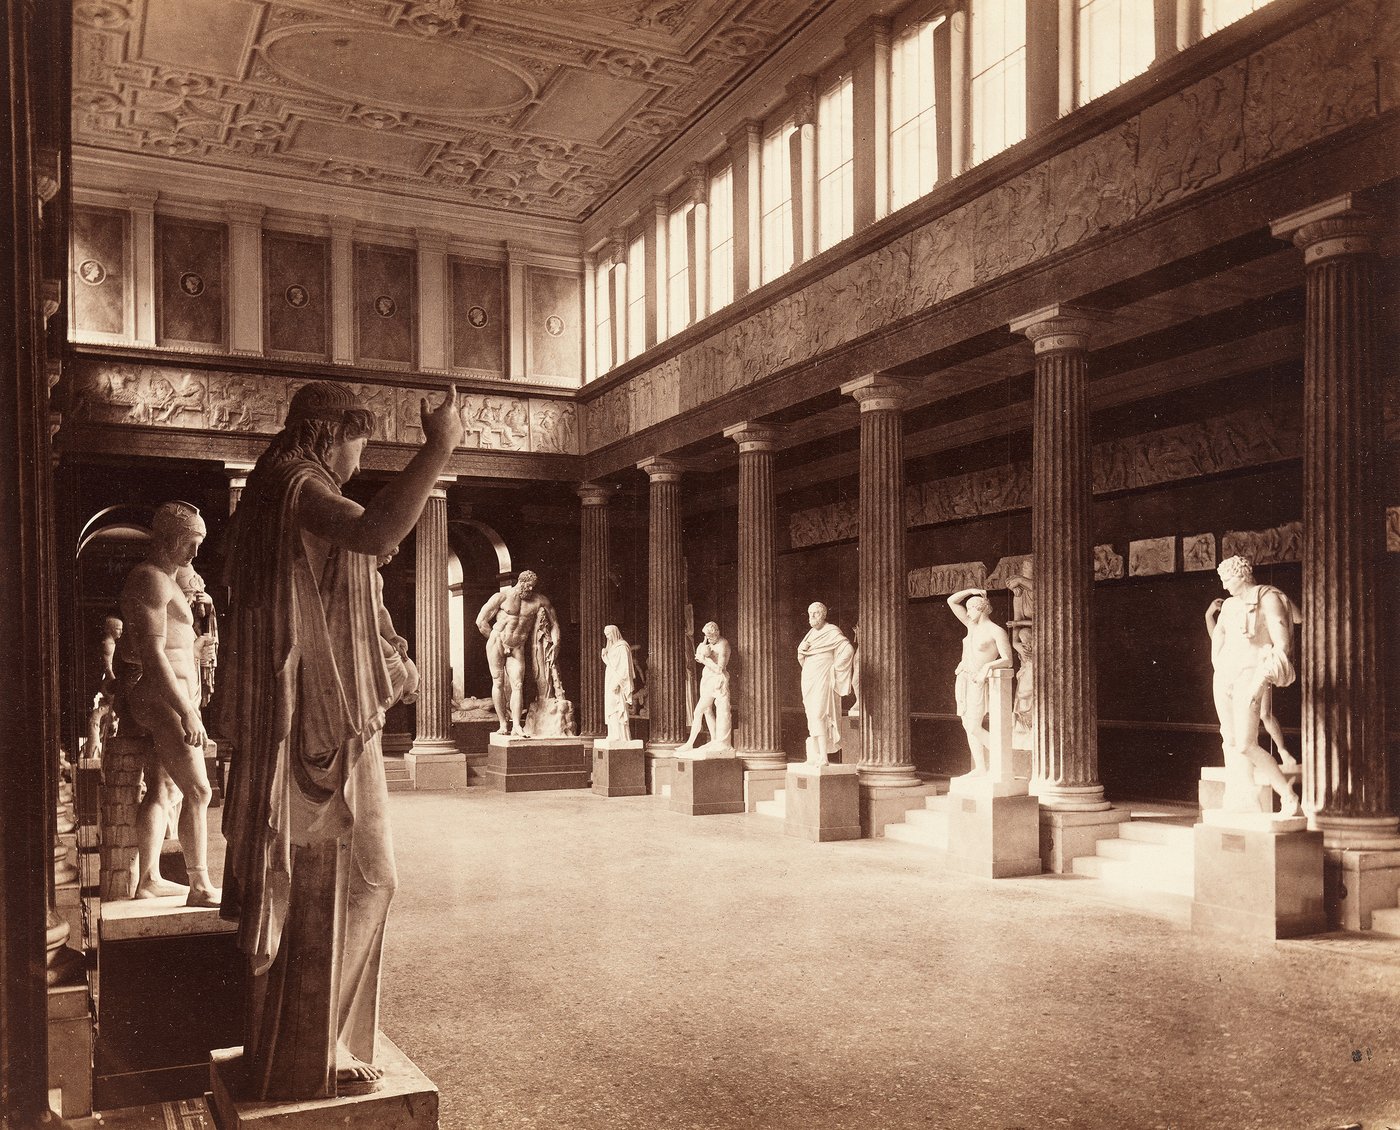 Eine historische Fotografie in Sepiafarben auf der ein großer Raum mit Säulenreihe zu sehen ist. zwischen denen griechische Skulpturen auf Podesten stehen, über den Säulen ein Bildfries und hohe Oberfenster, durch die Licht hineinscheint